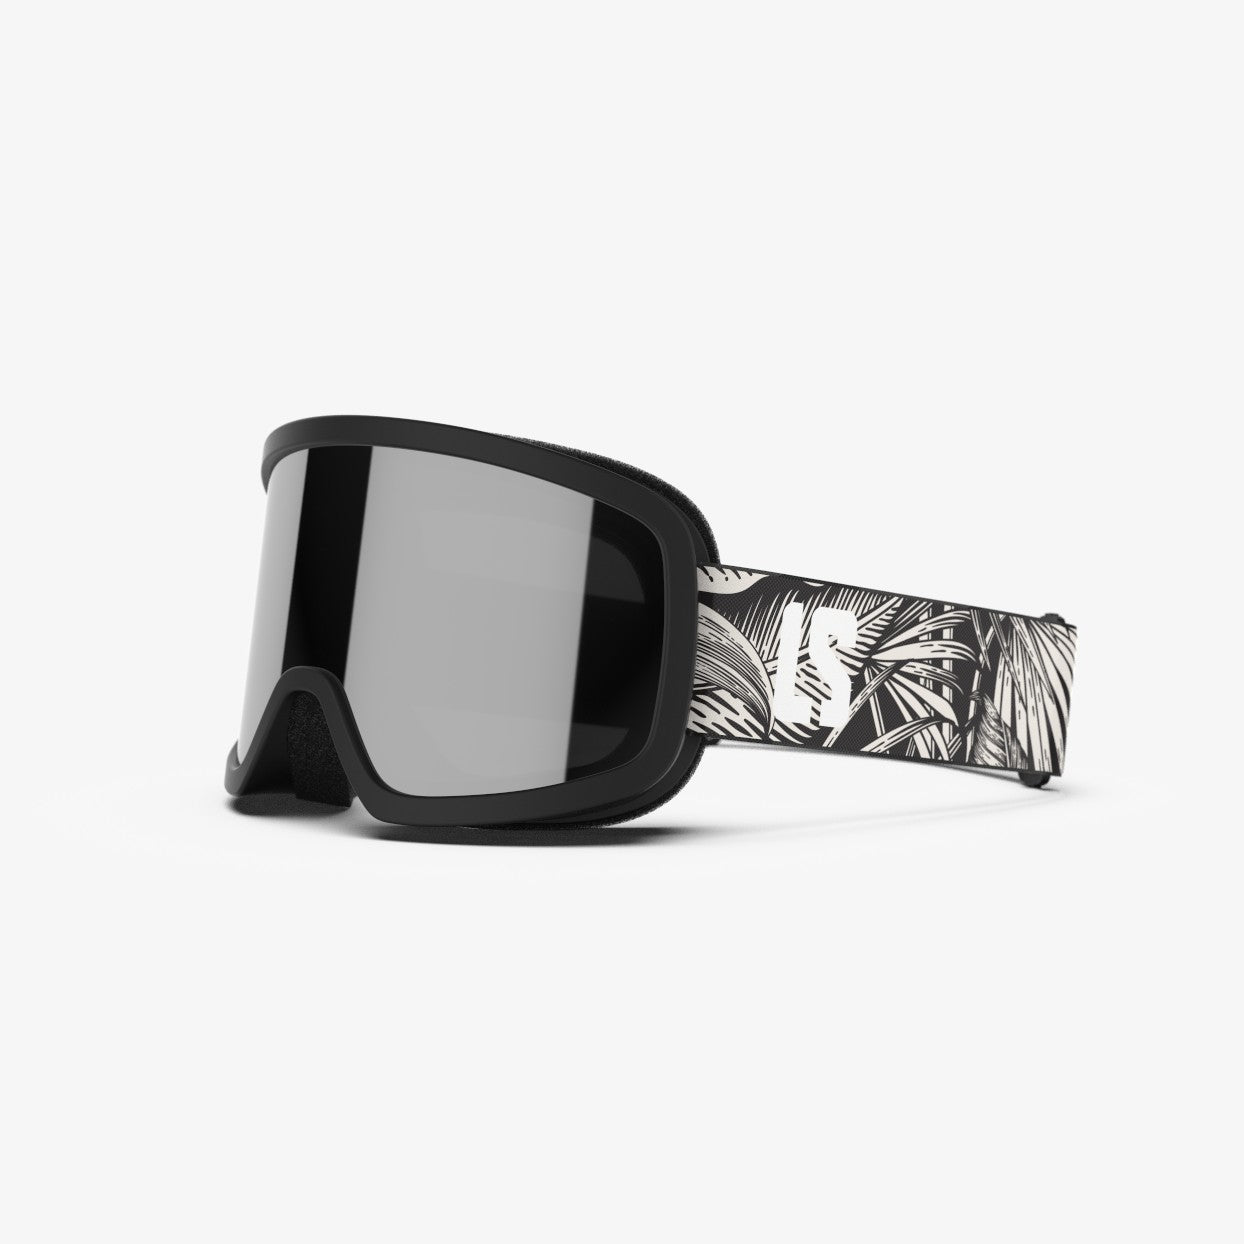 Super Z Outlet Masque de ski thermique en acrylique pour extérieur, Noir,  Taille unique